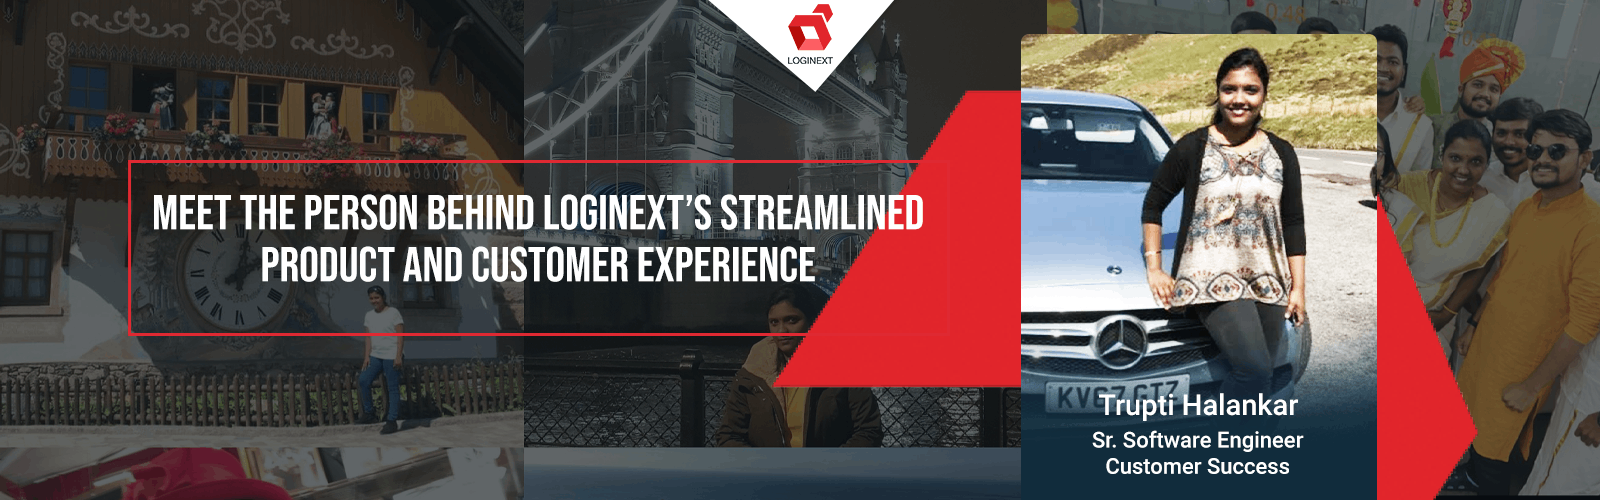 LogiNext'in Geliştirilmiş Ürünü ve Müşteri Deneyiminin Arkasındaki Kişi Trupti Halankar ile Tanışın